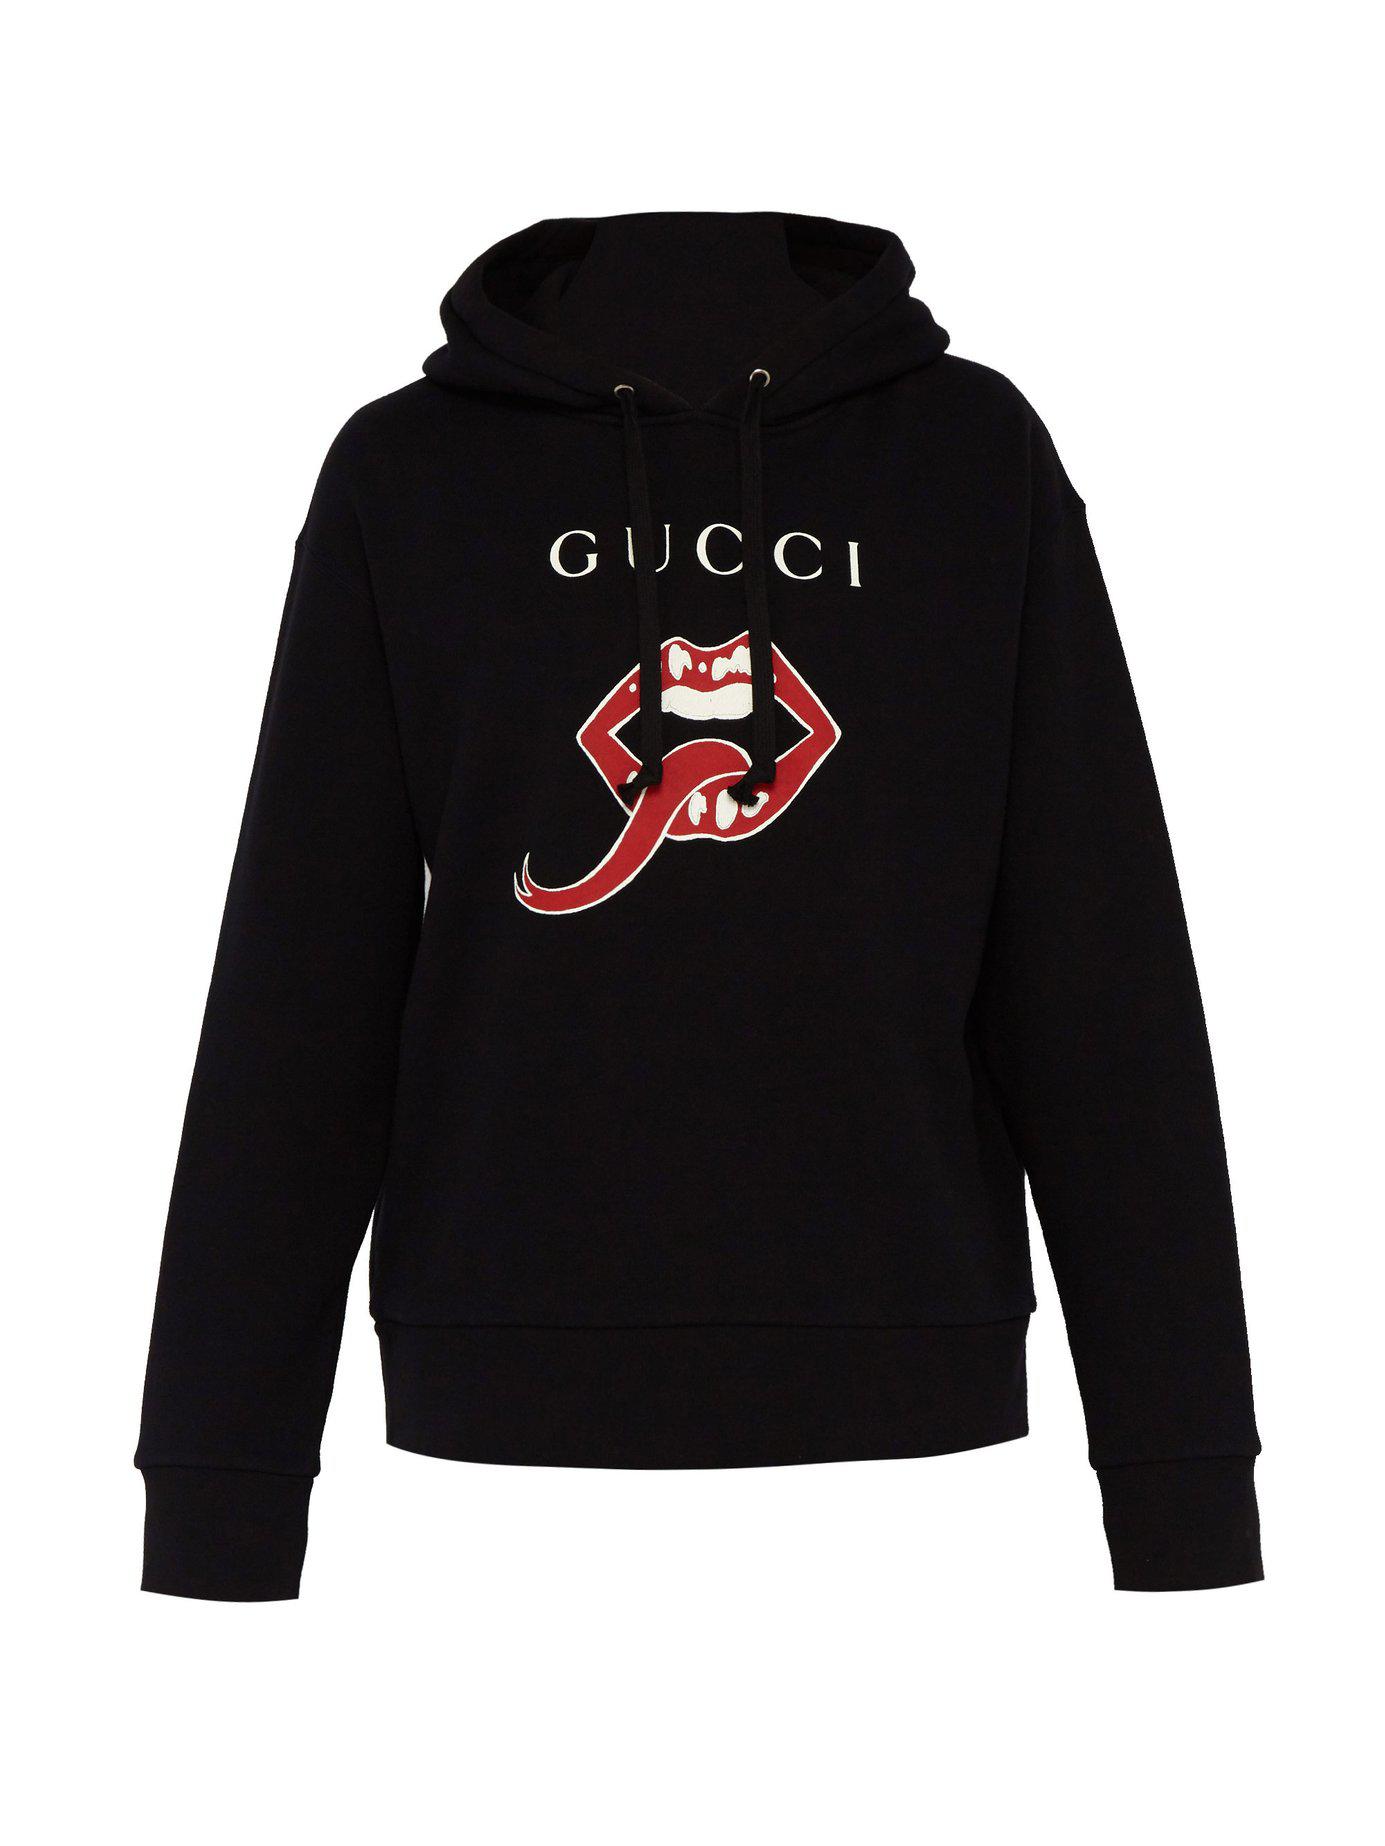 Gucci Lips Hooded Sweatshirt in Black for Men | Lyst